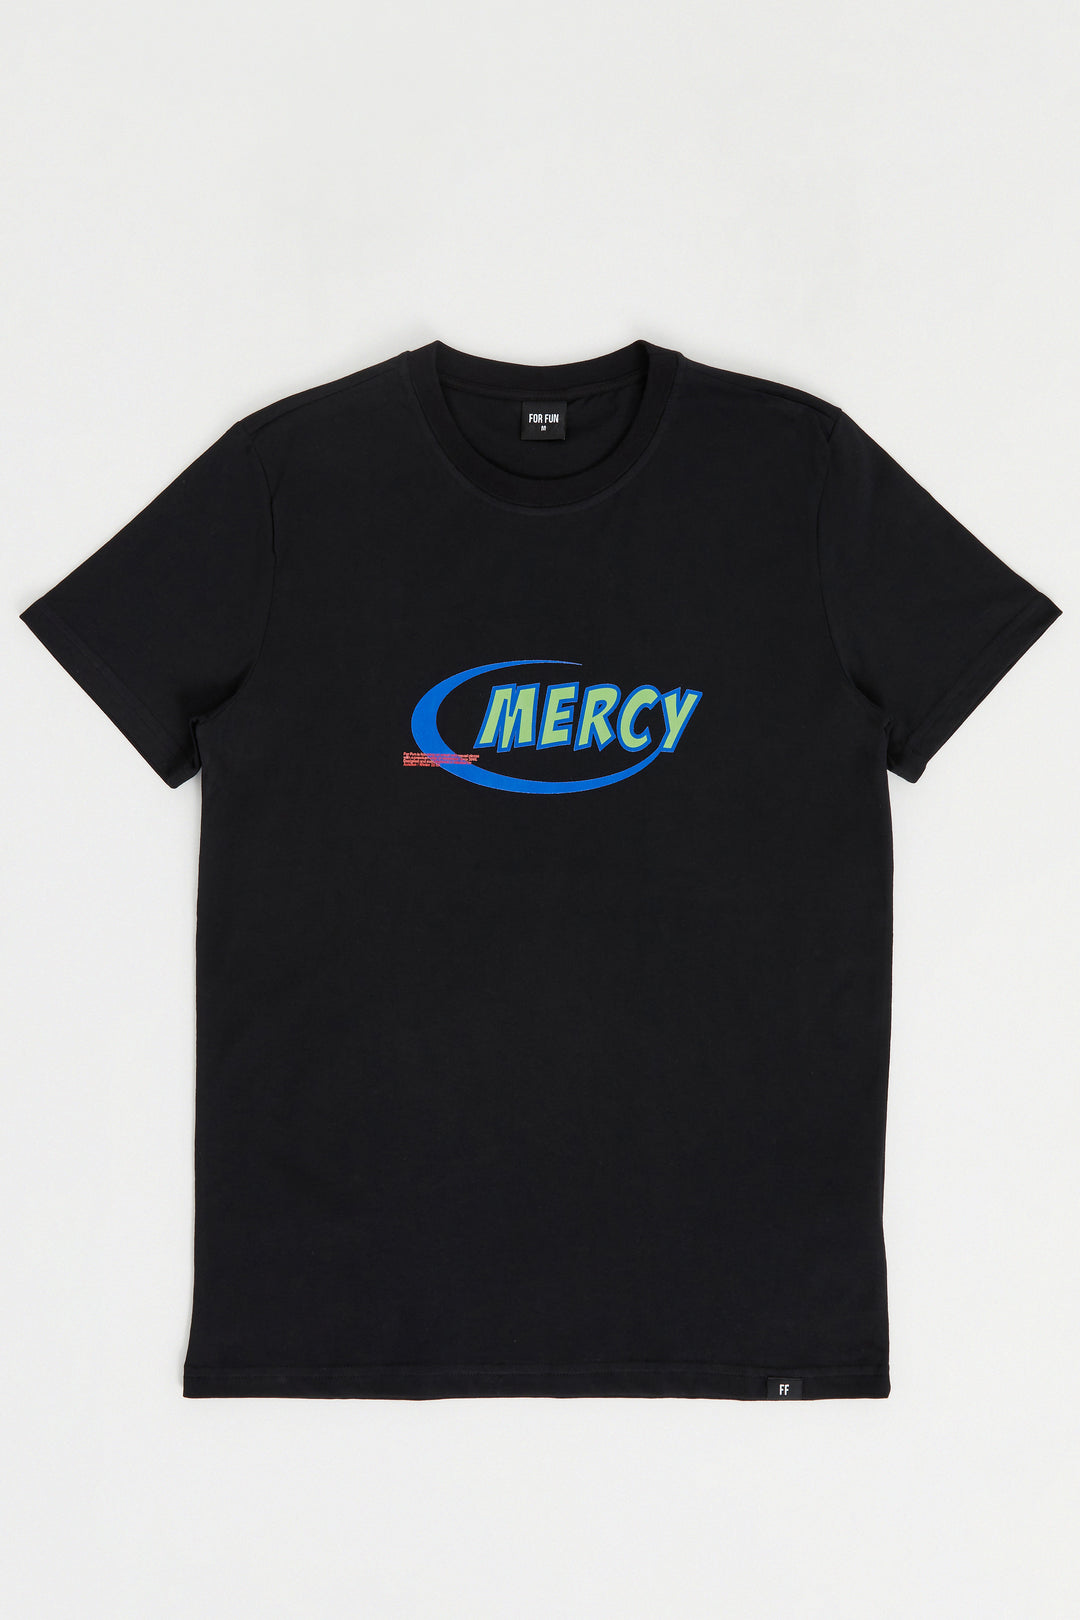 Mercy / T-shirt